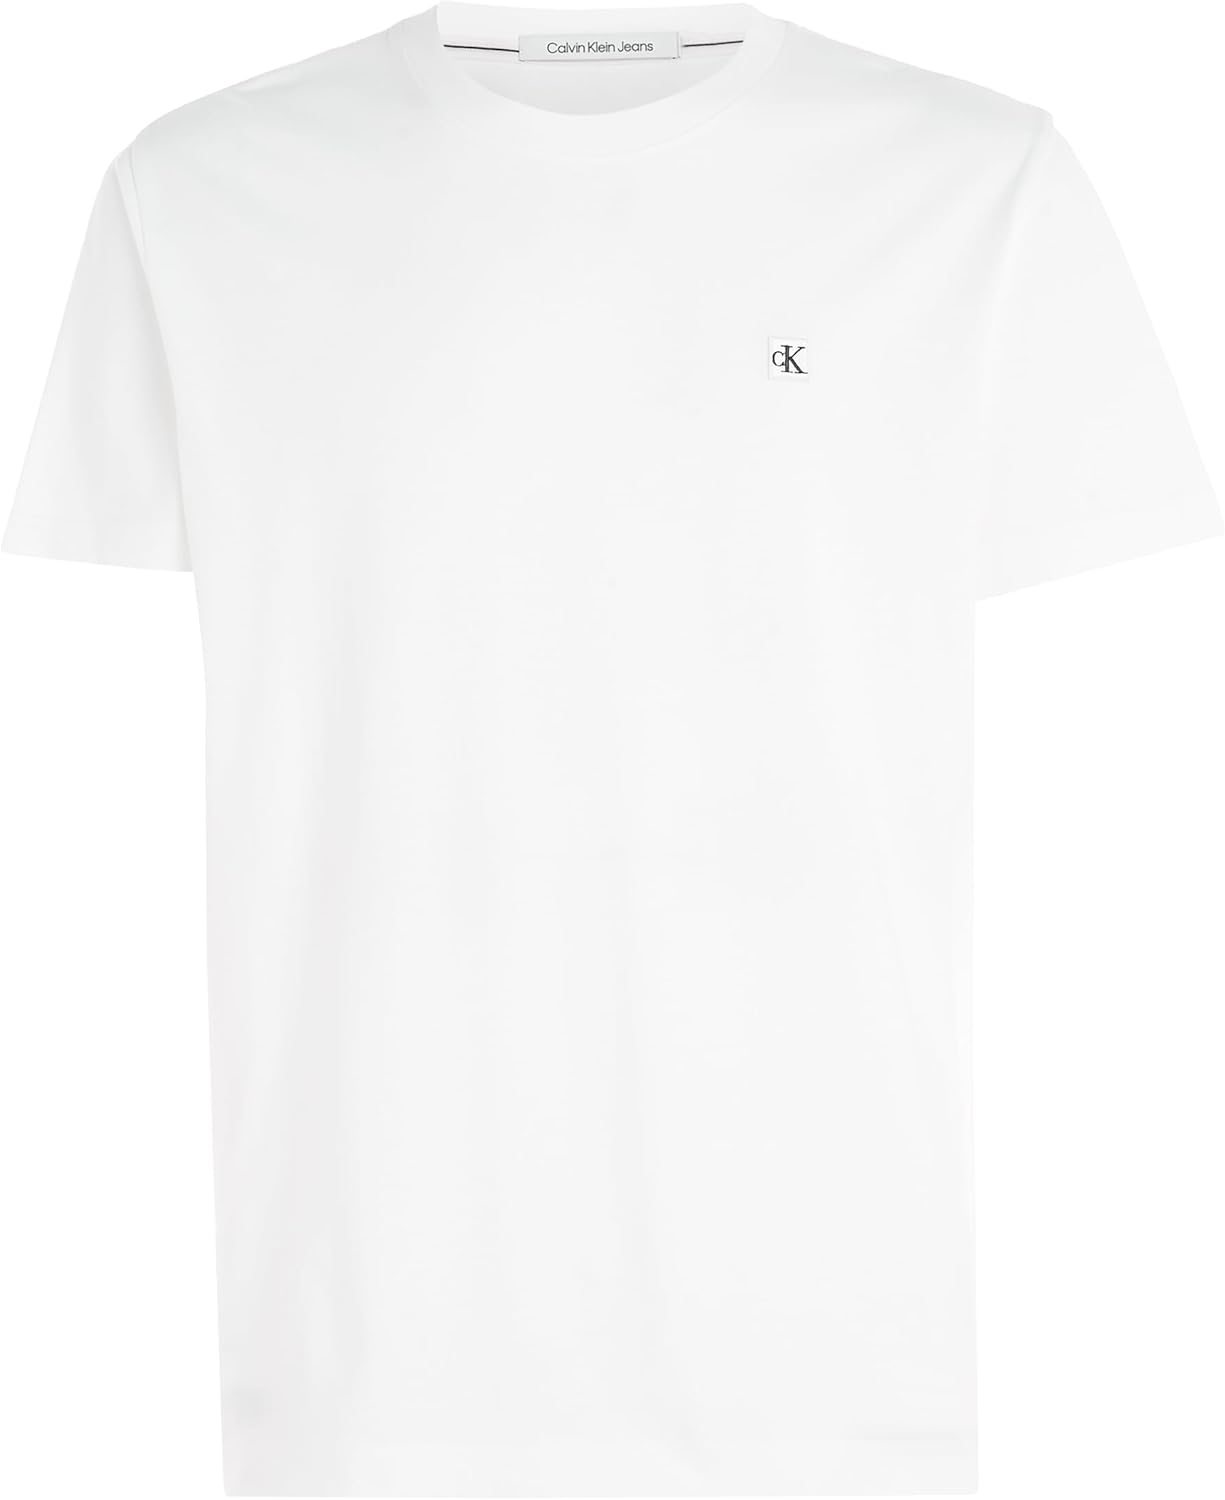 CALVIN KLEIN T-shirt Uomo - Bianco